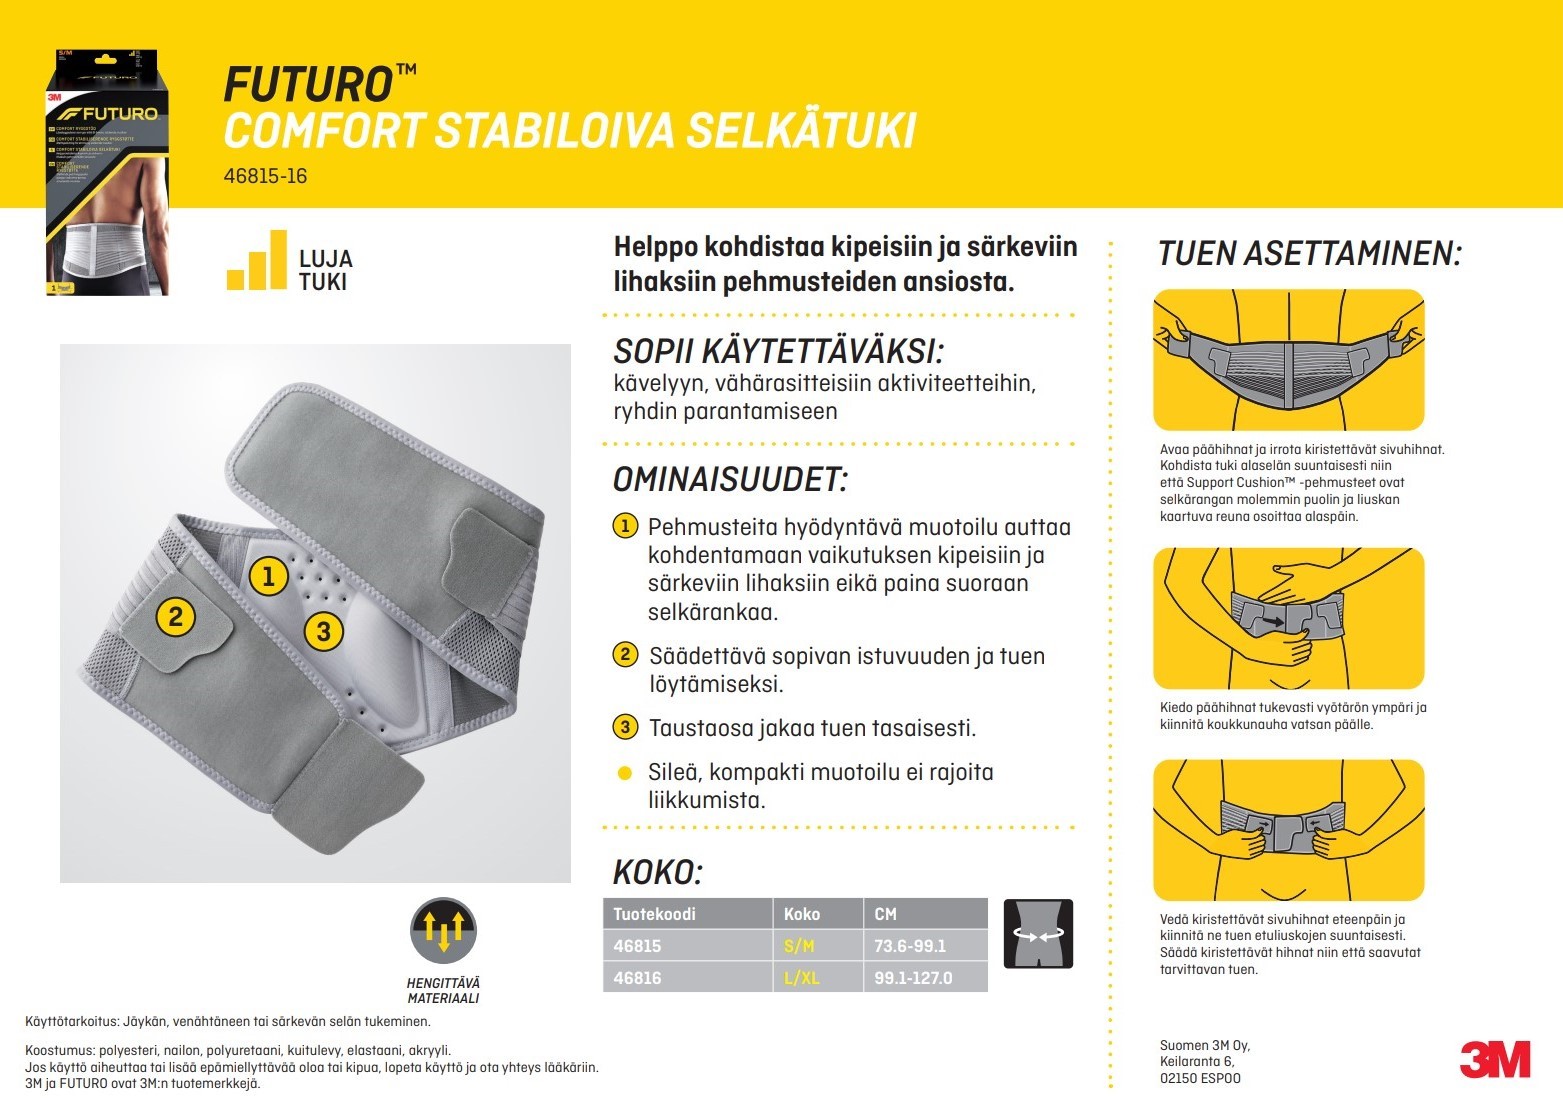 FUTURO_8482__Comfort_stabiloiva_selkaetuki_2-Apteekkini.fi